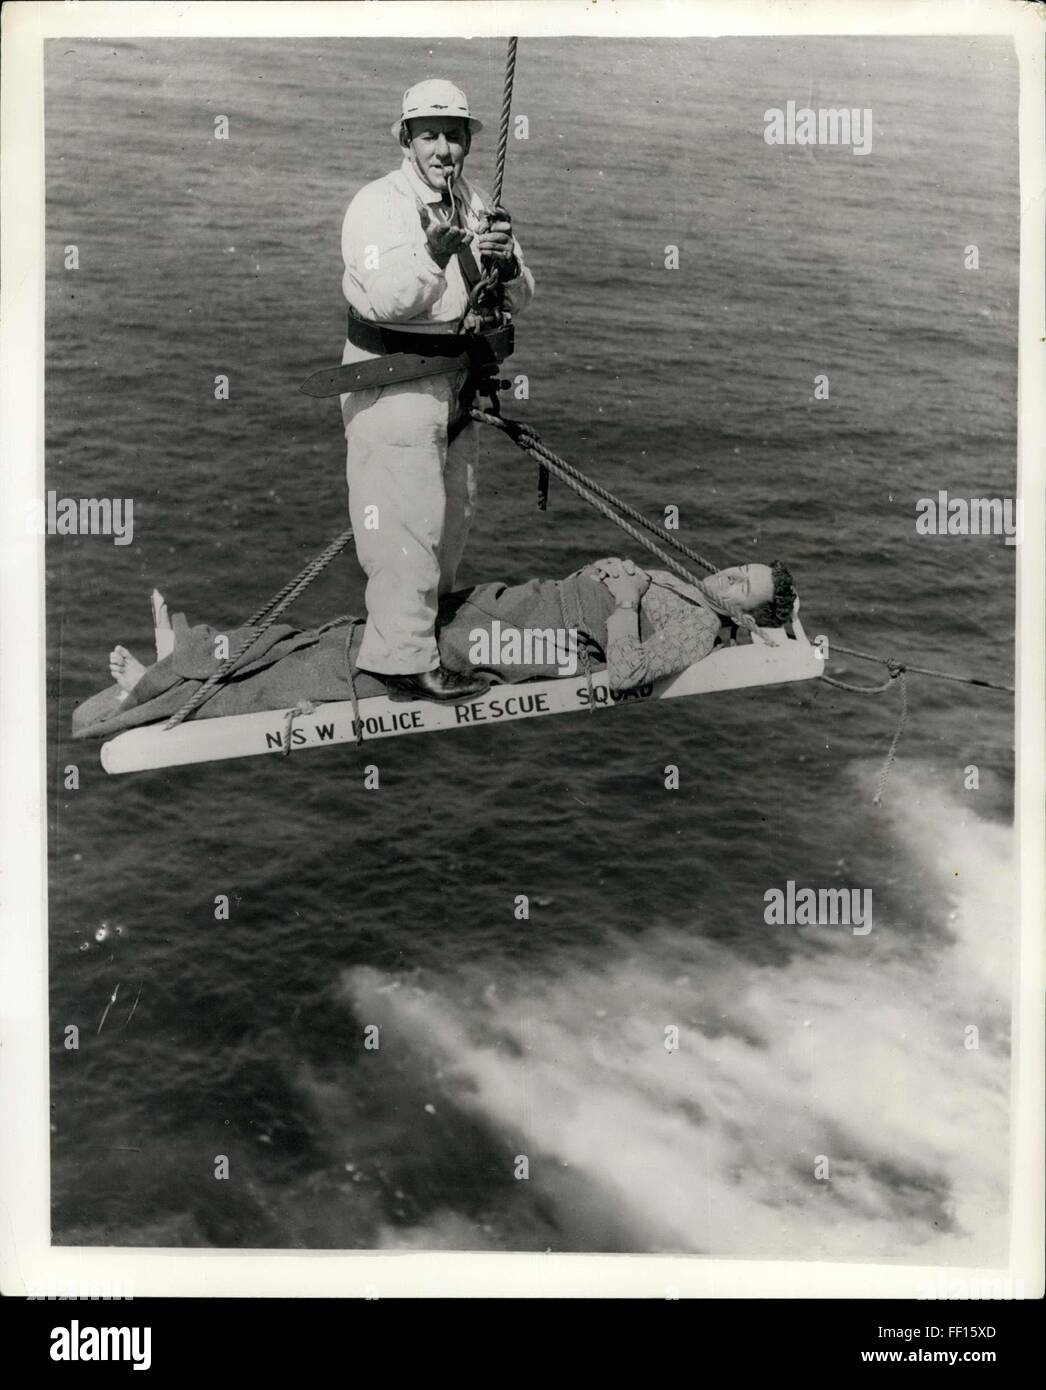 1957 - vierhundert Füße Klippe Rettung. Angler drei Stunden der Qual auf Felsvorsprung. Sgt. Harry Ware von New South Wales Police Rescue Squad-verwendet eine Pfeife als ein Signal - während dem Hissen der Fischer William Waterer an die Spitze einer 400 ft Klippe am North Head, n.s.w. Waterer (36) hatte in einer Felsspalte beim Angeln-von einer riesigen Welle-die Bein geschnappt gewaschen worden. Er lag in Agonie auf einem schmalen Sims 400 ft unterhalb blauen Fisch, Männlich, bevor die Rettung Mannschaften ihre komplexe Geräte für die gefährliche Rettung behoben bekommen konnte. © Keystone Bilder USA/ZUMAPRESS.com/Alamy Live-Nachrichten Stockfoto